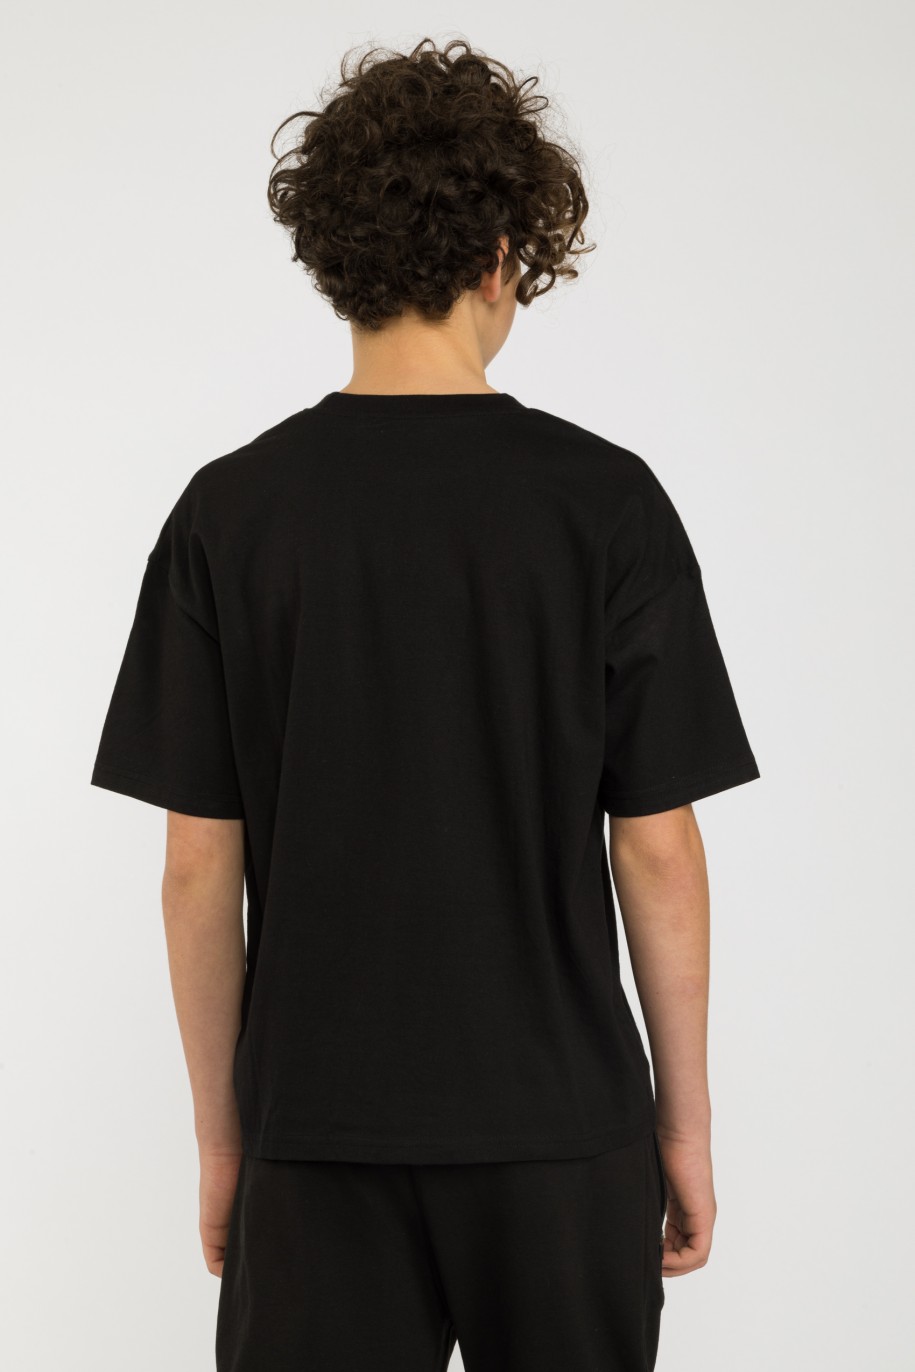 Czarny t-shirt z aplikacją WASP UP dla chłopaka - 32865